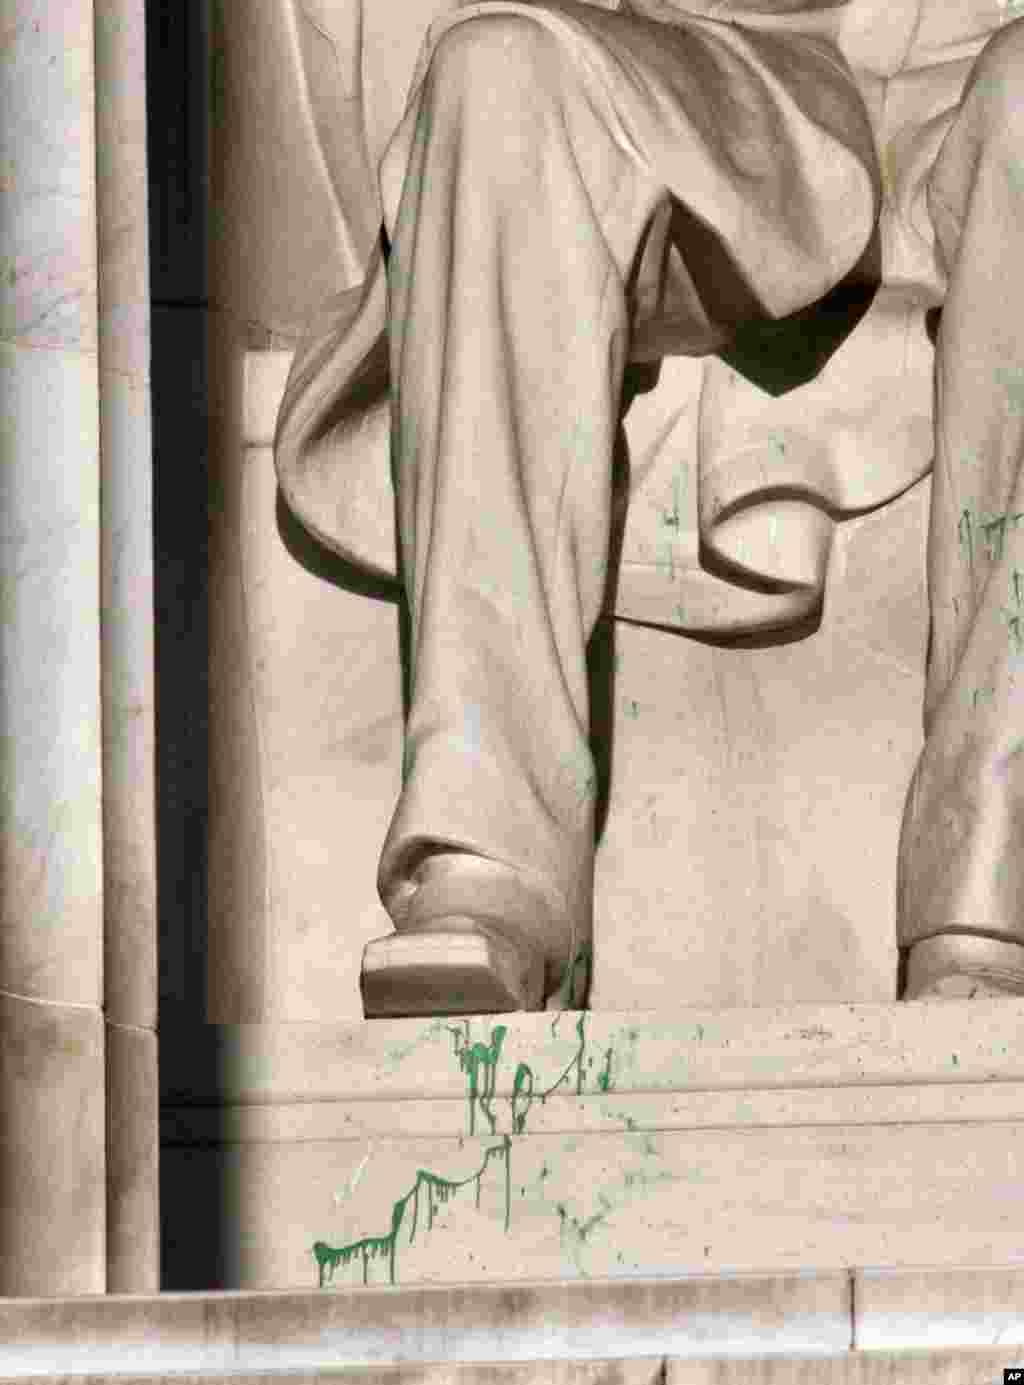 El monumento Abraham Lincoln, en Washington, permaneció cerrado por algunas horas este viernes, luego de que un visitante manchara la estatua con pintura verde.